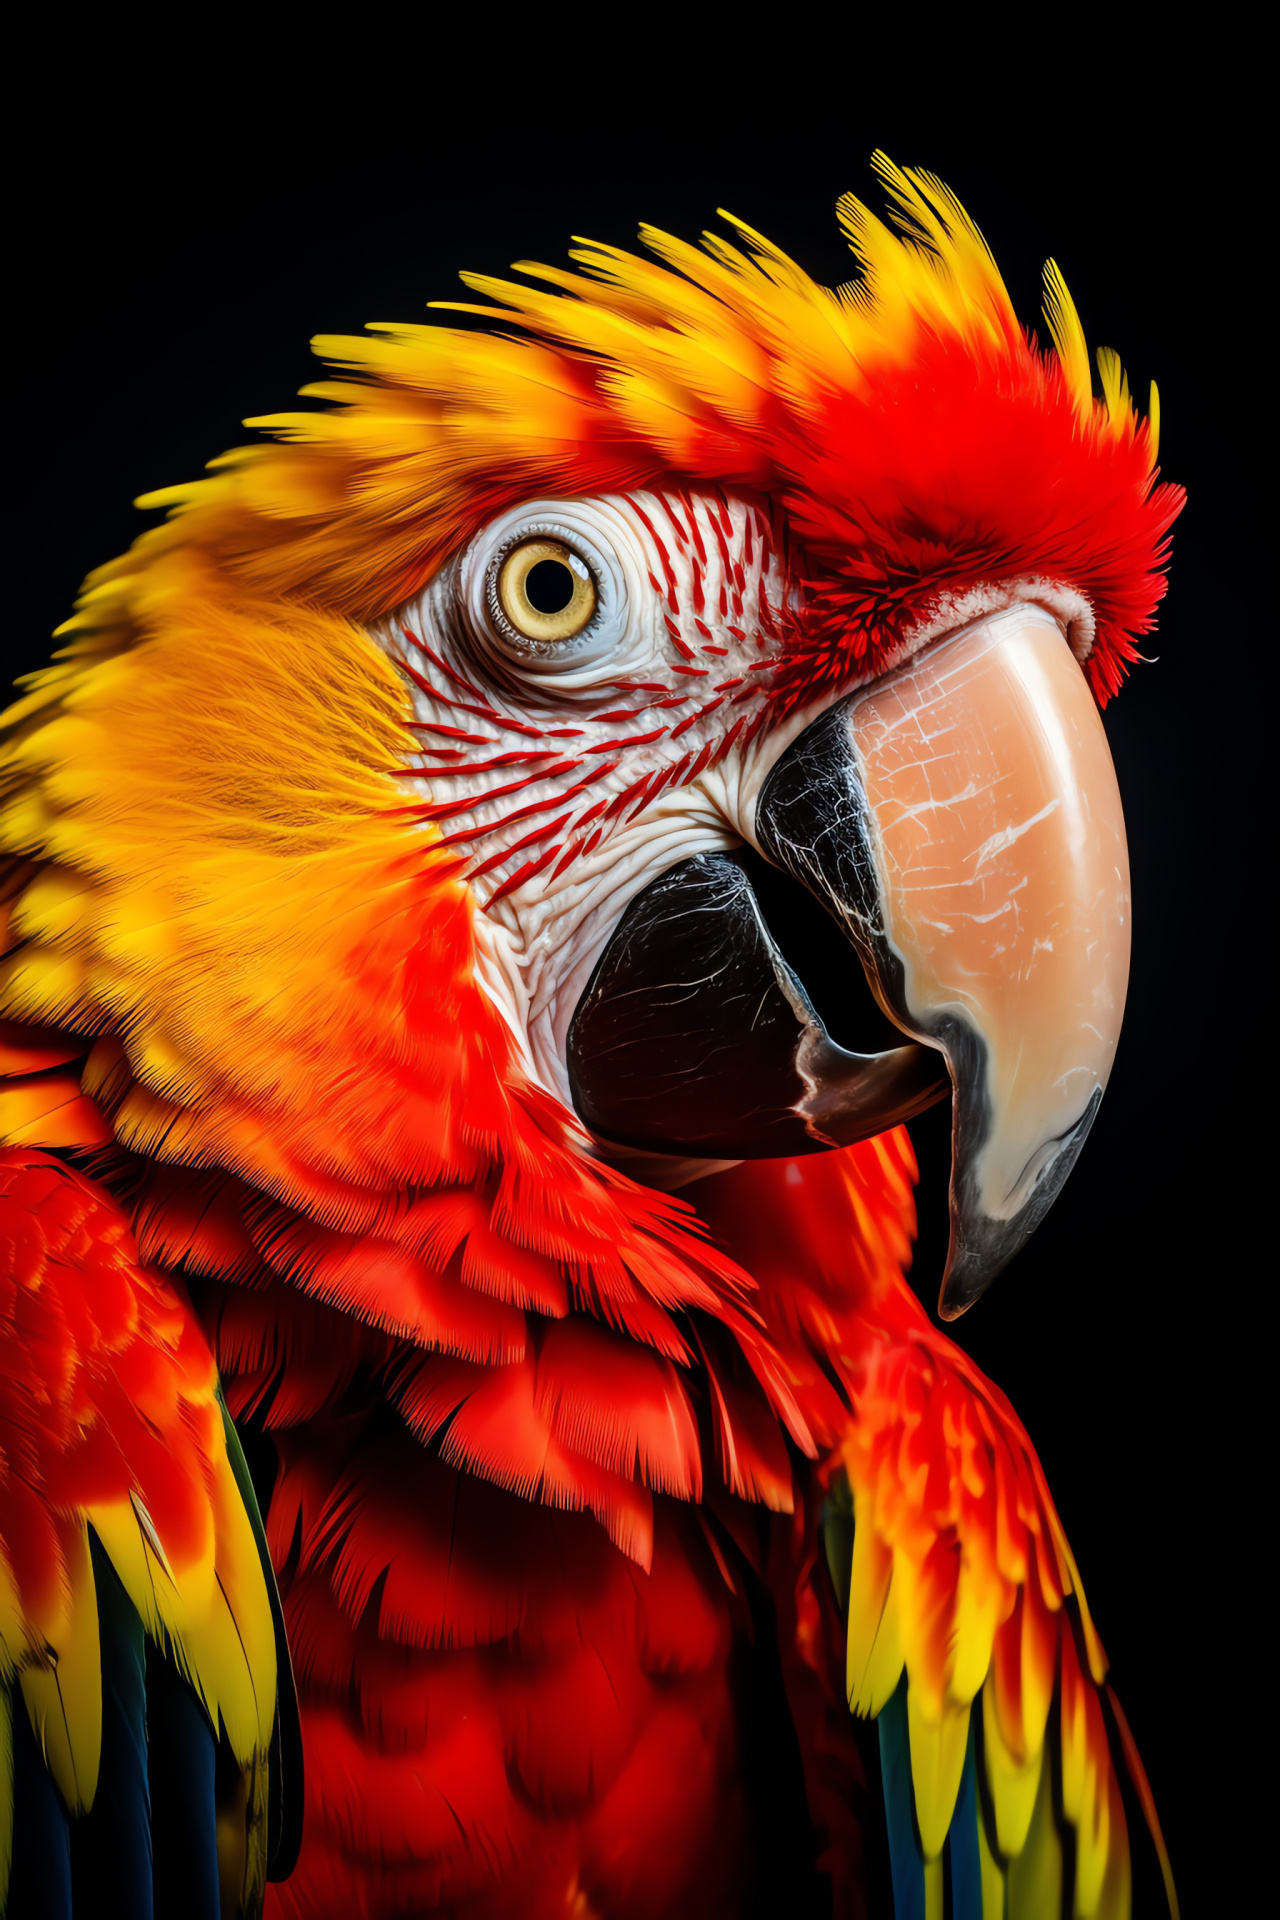 Red parrot splendor, Avian poise, Bird lover's favorite, Ornithologist's study, Colorful nature, HD Phone Wallpaper